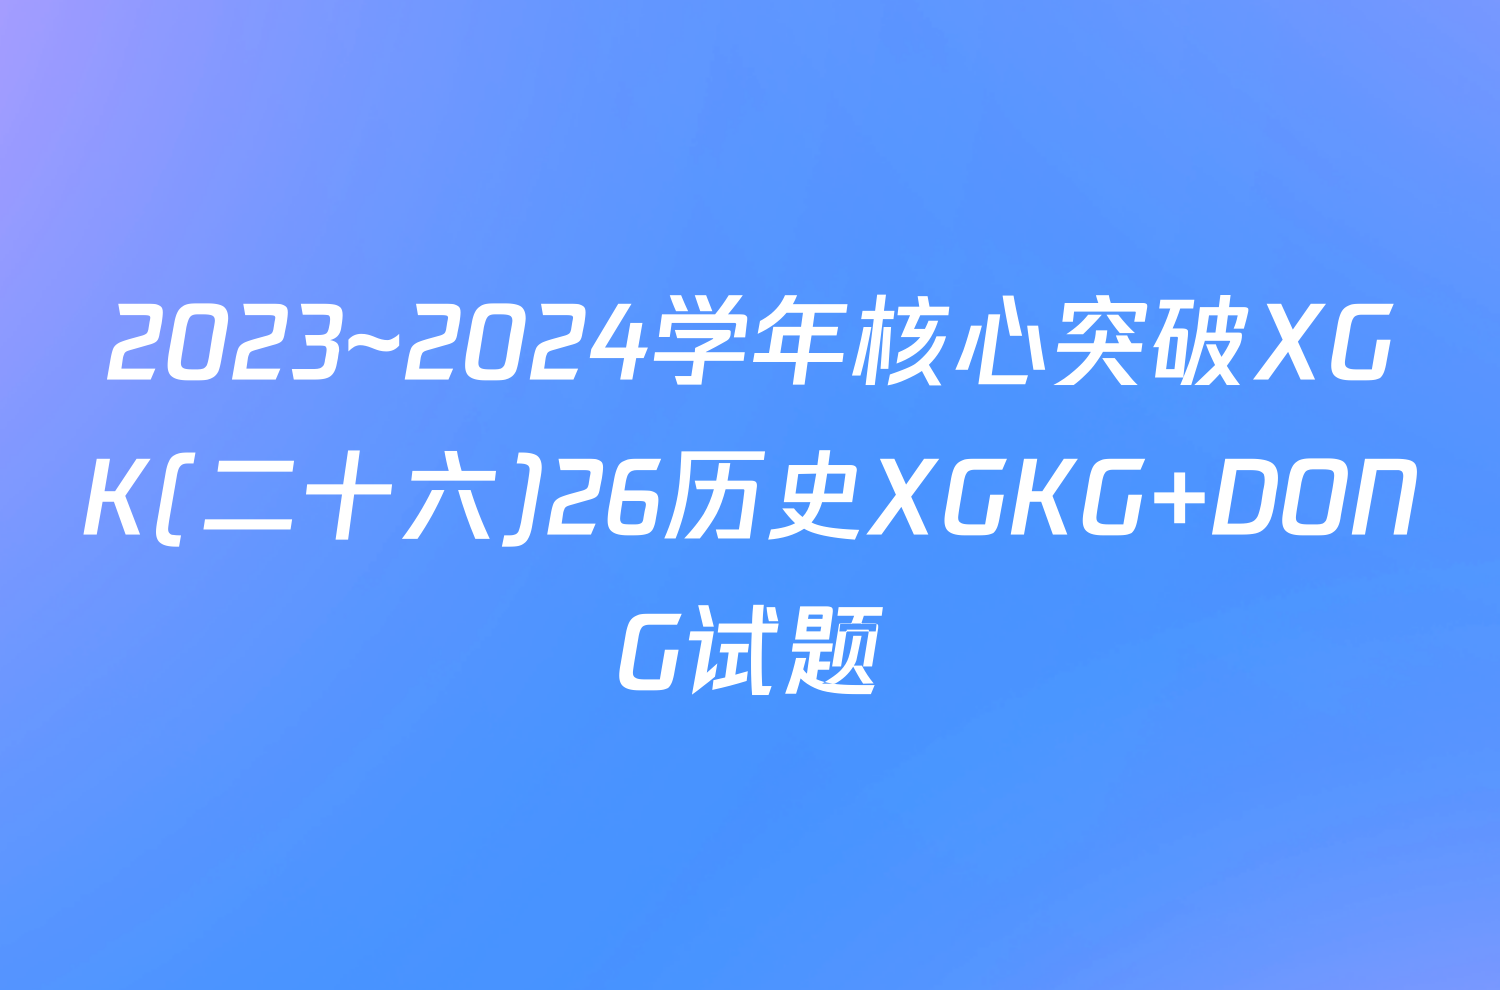 2023~2024学年核心突破XGK(二十六)26历史XGKG DONG试题